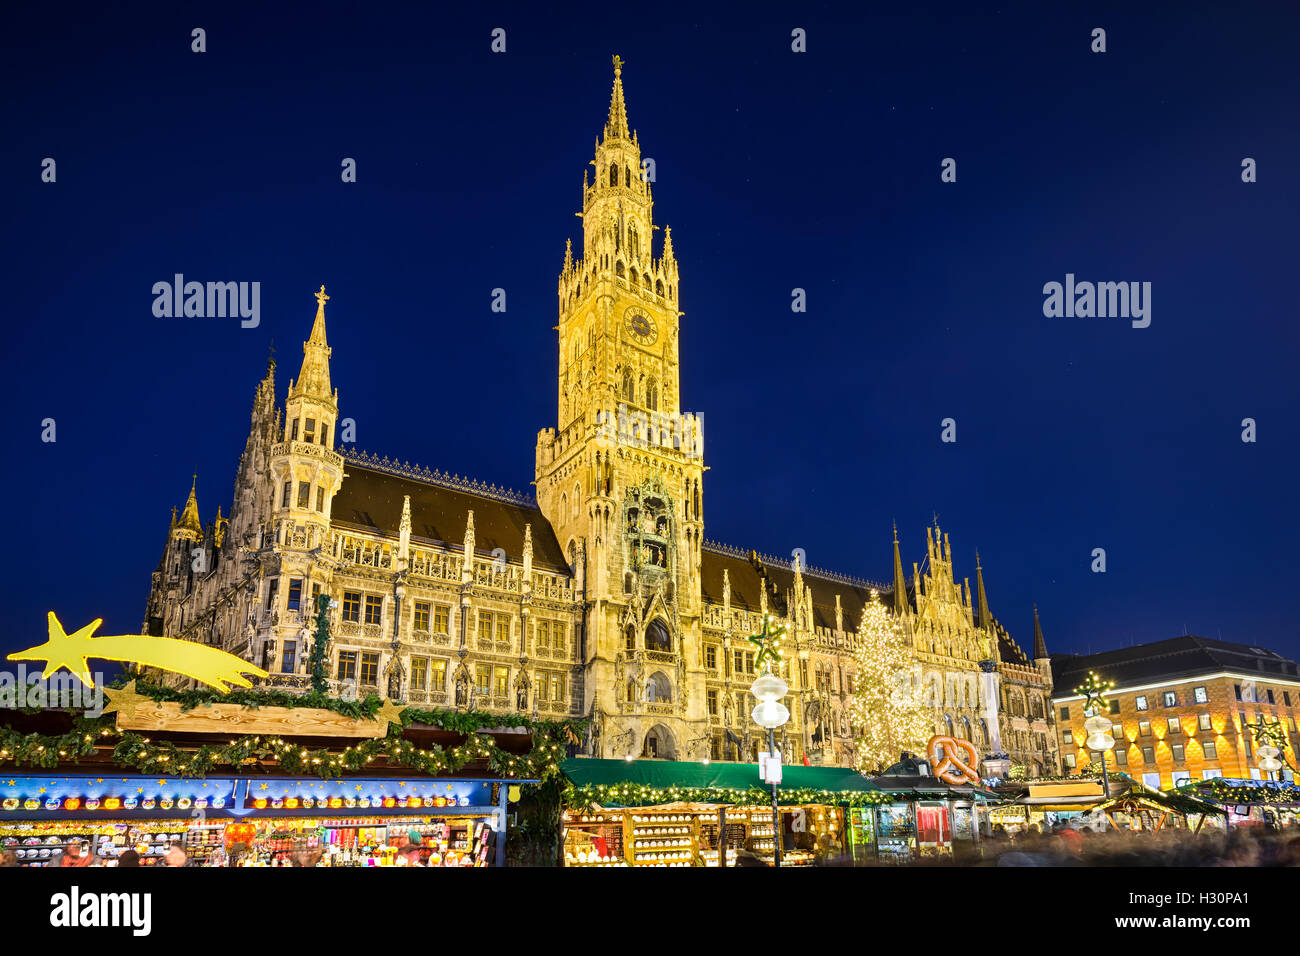 L'Hôtel de ville et marché de Noël dans la nuit à Munich, Allemagne Banque D'Images